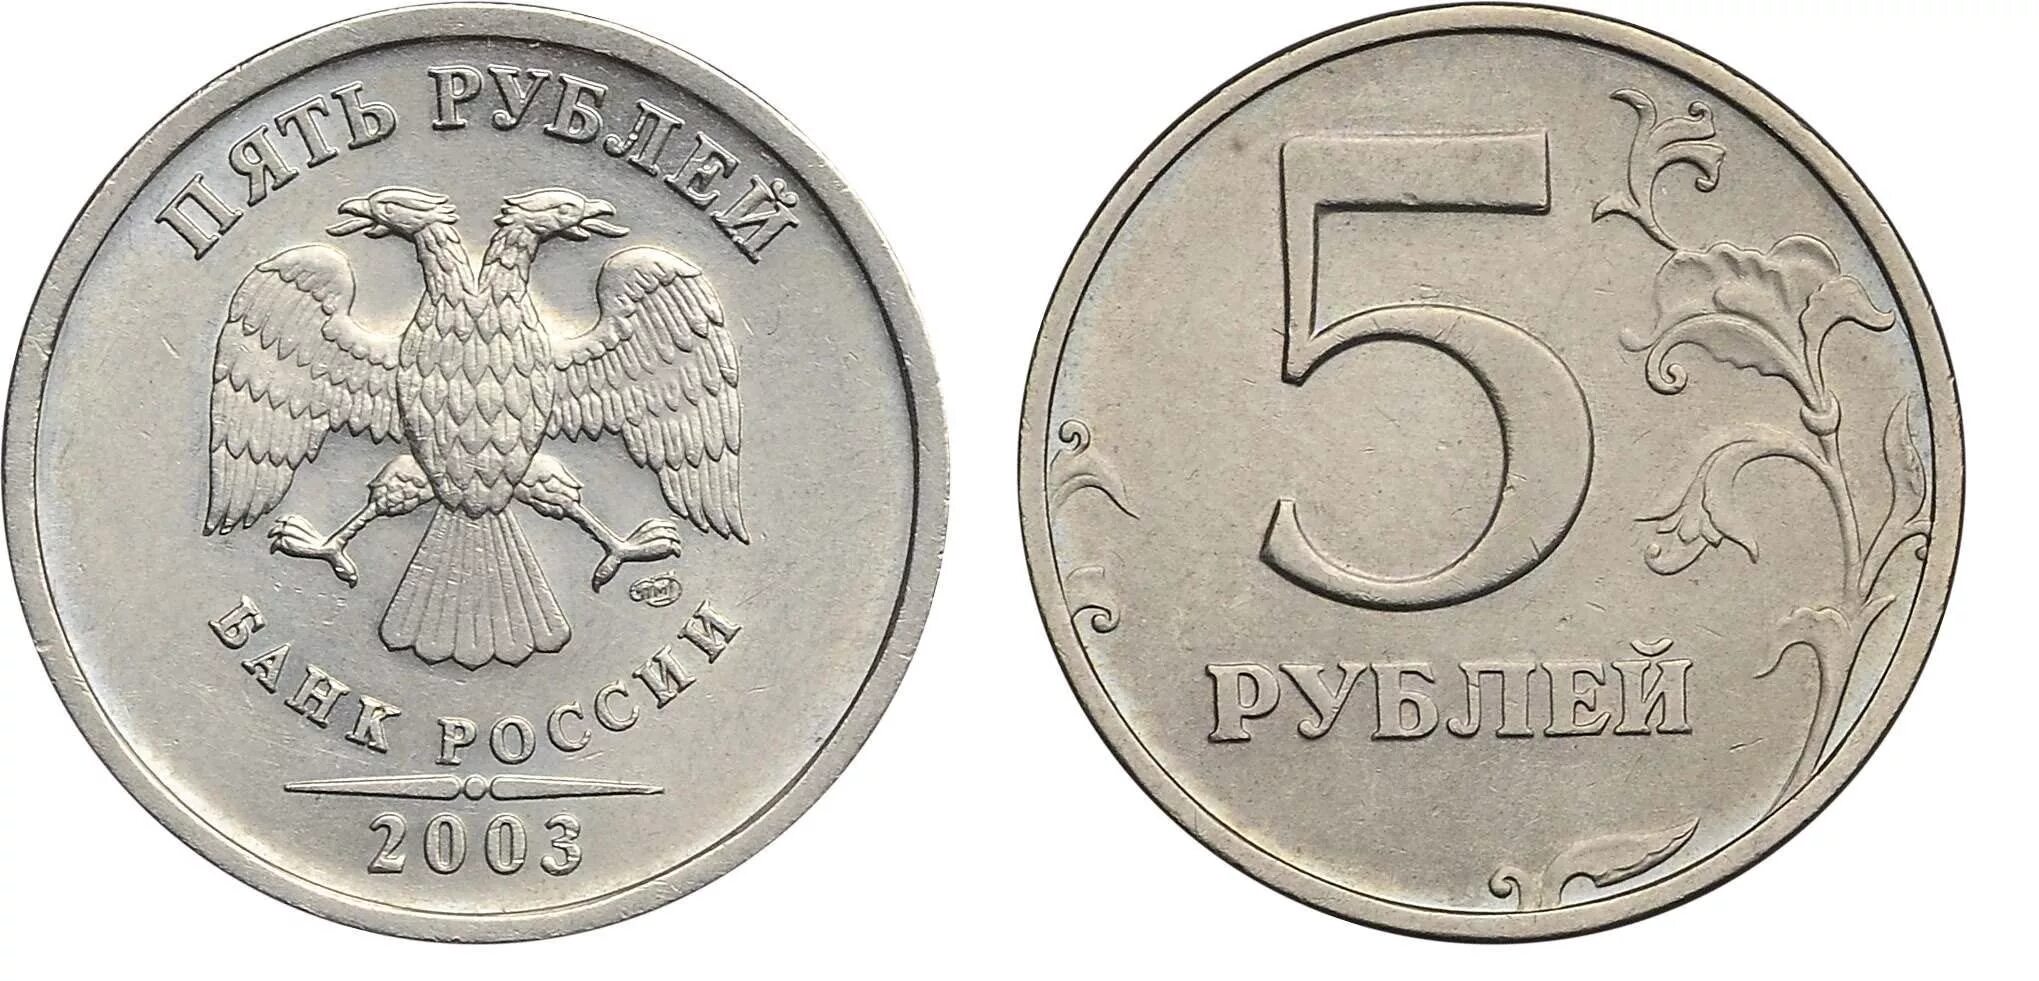 5 Рублей 1998 Московский монетный двор. 5 Рублей 1998 ММД. 5 Рублей 2008 СПМД. 5 Рублей 2008 года СПМД.